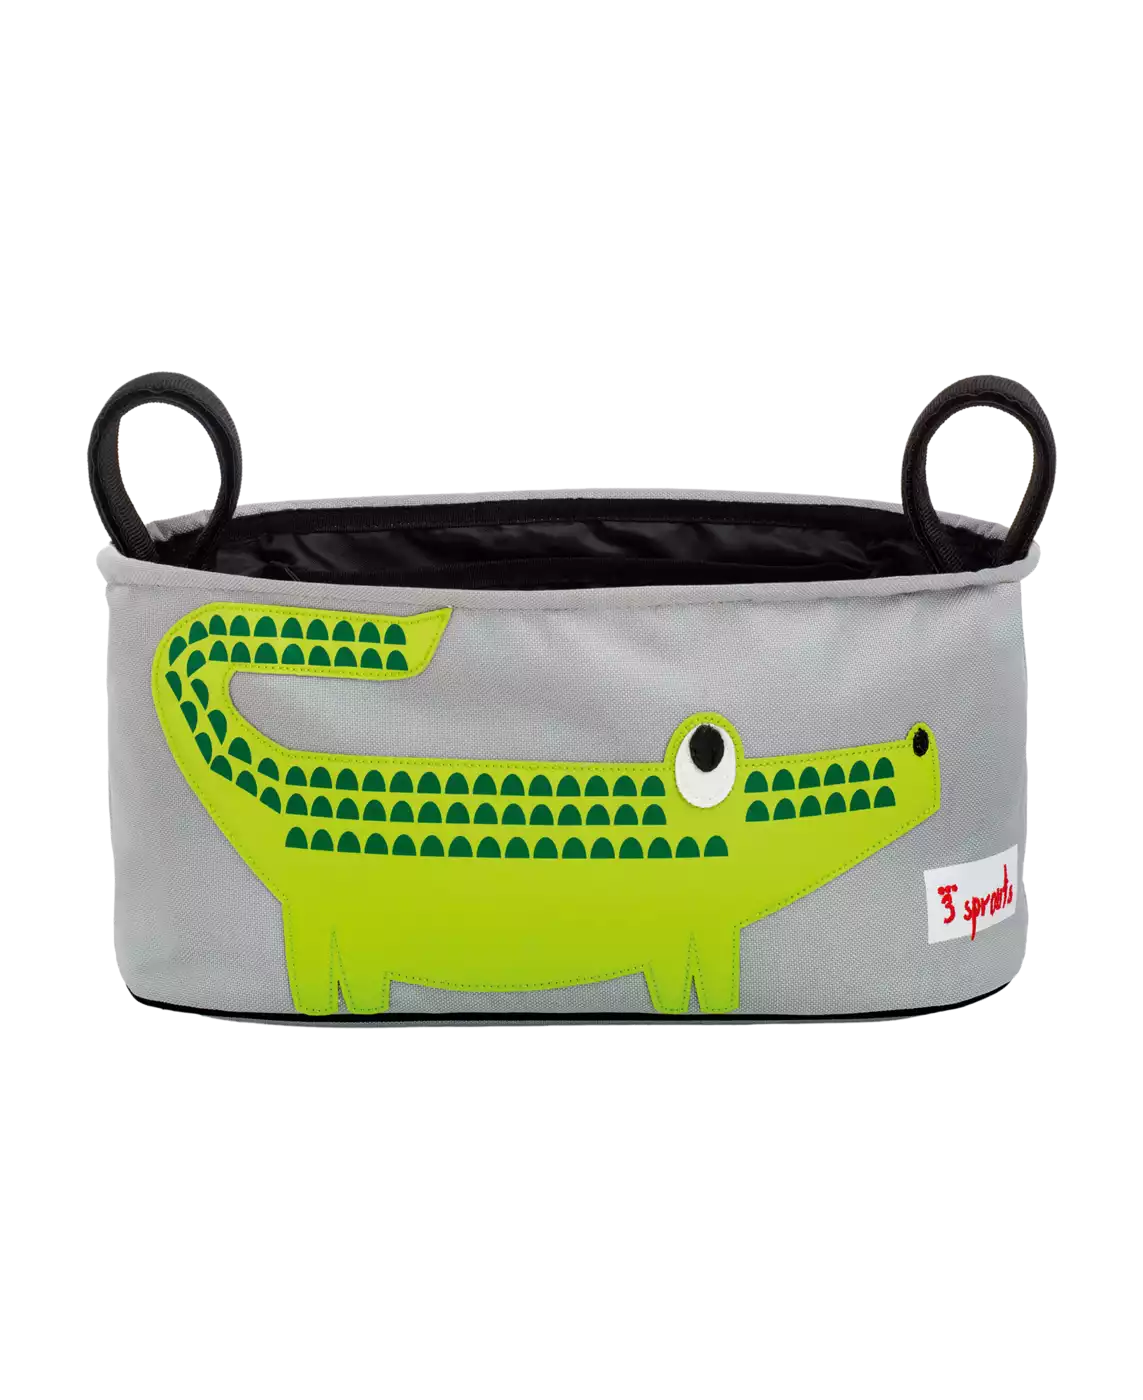 Kinderwagen-Tasche Krokodil 3 sprouts Grau 2000566315707 3